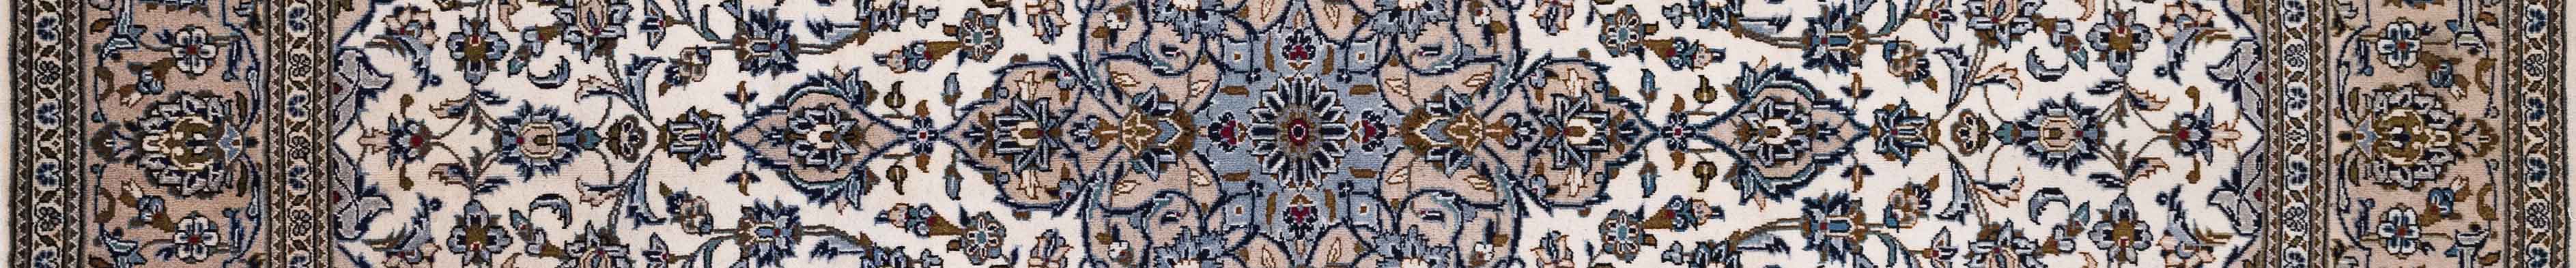 Kashan Persian Carpet Rug N1Carpet Canada Montreal Tapis Persan 1850